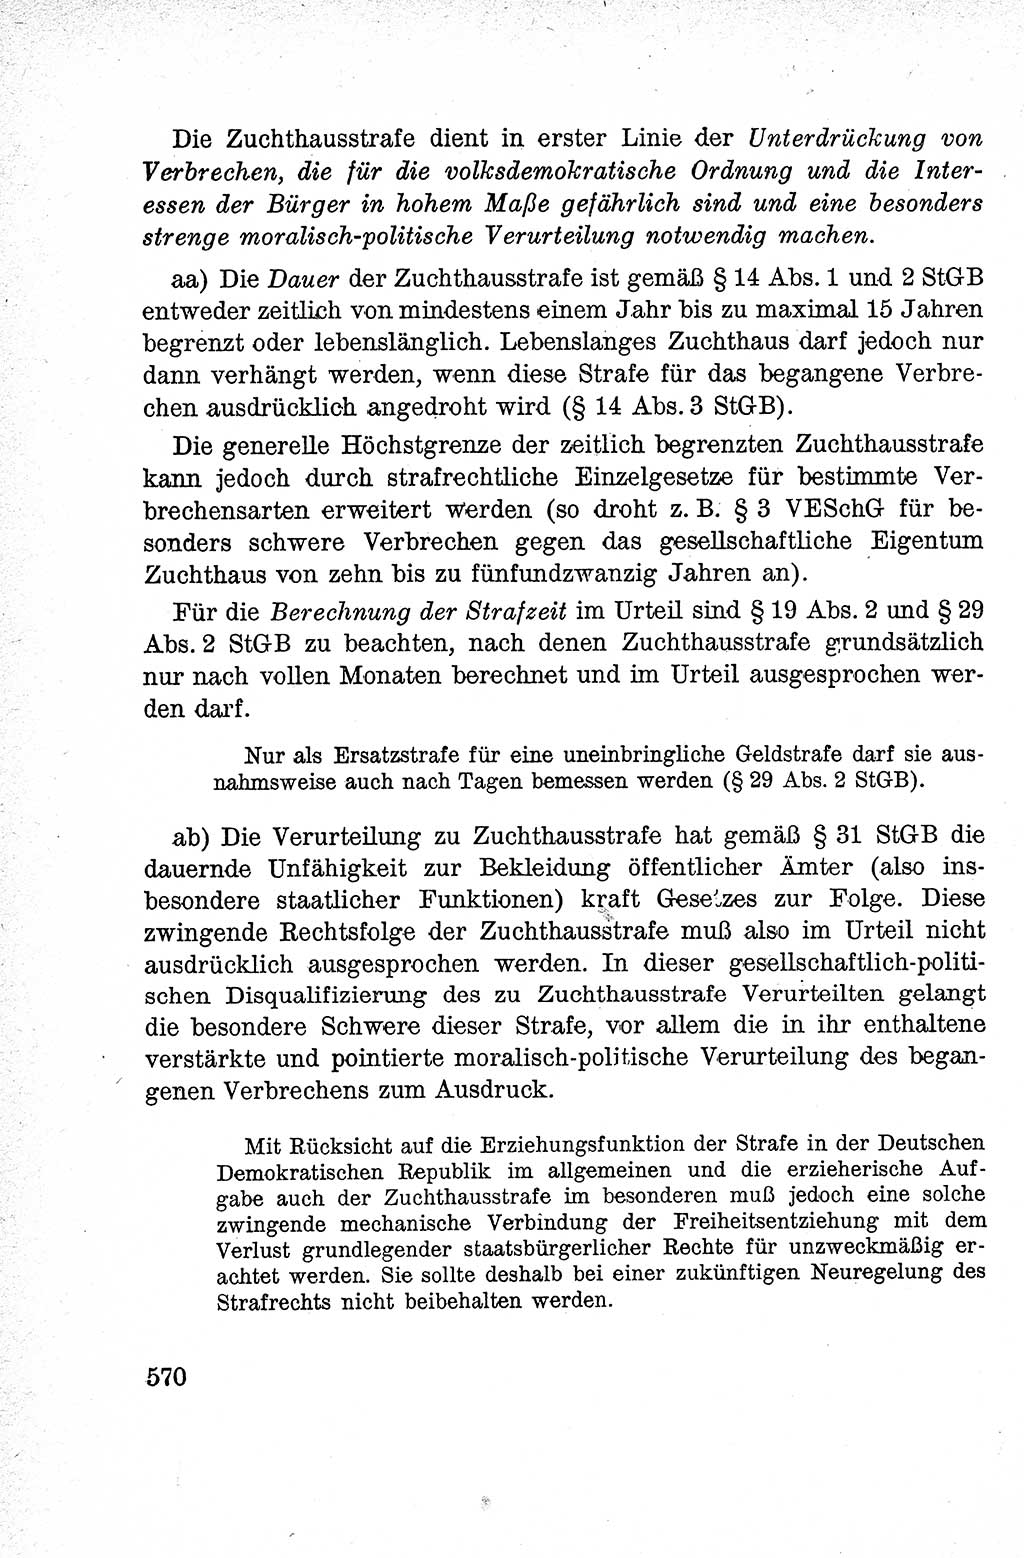 Lehrbuch des Strafrechts der Deutschen Demokratischen Republik (DDR), Allgemeiner Teil 1959, Seite 570 (Lb. Strafr. DDR AT 1959, S. 570)